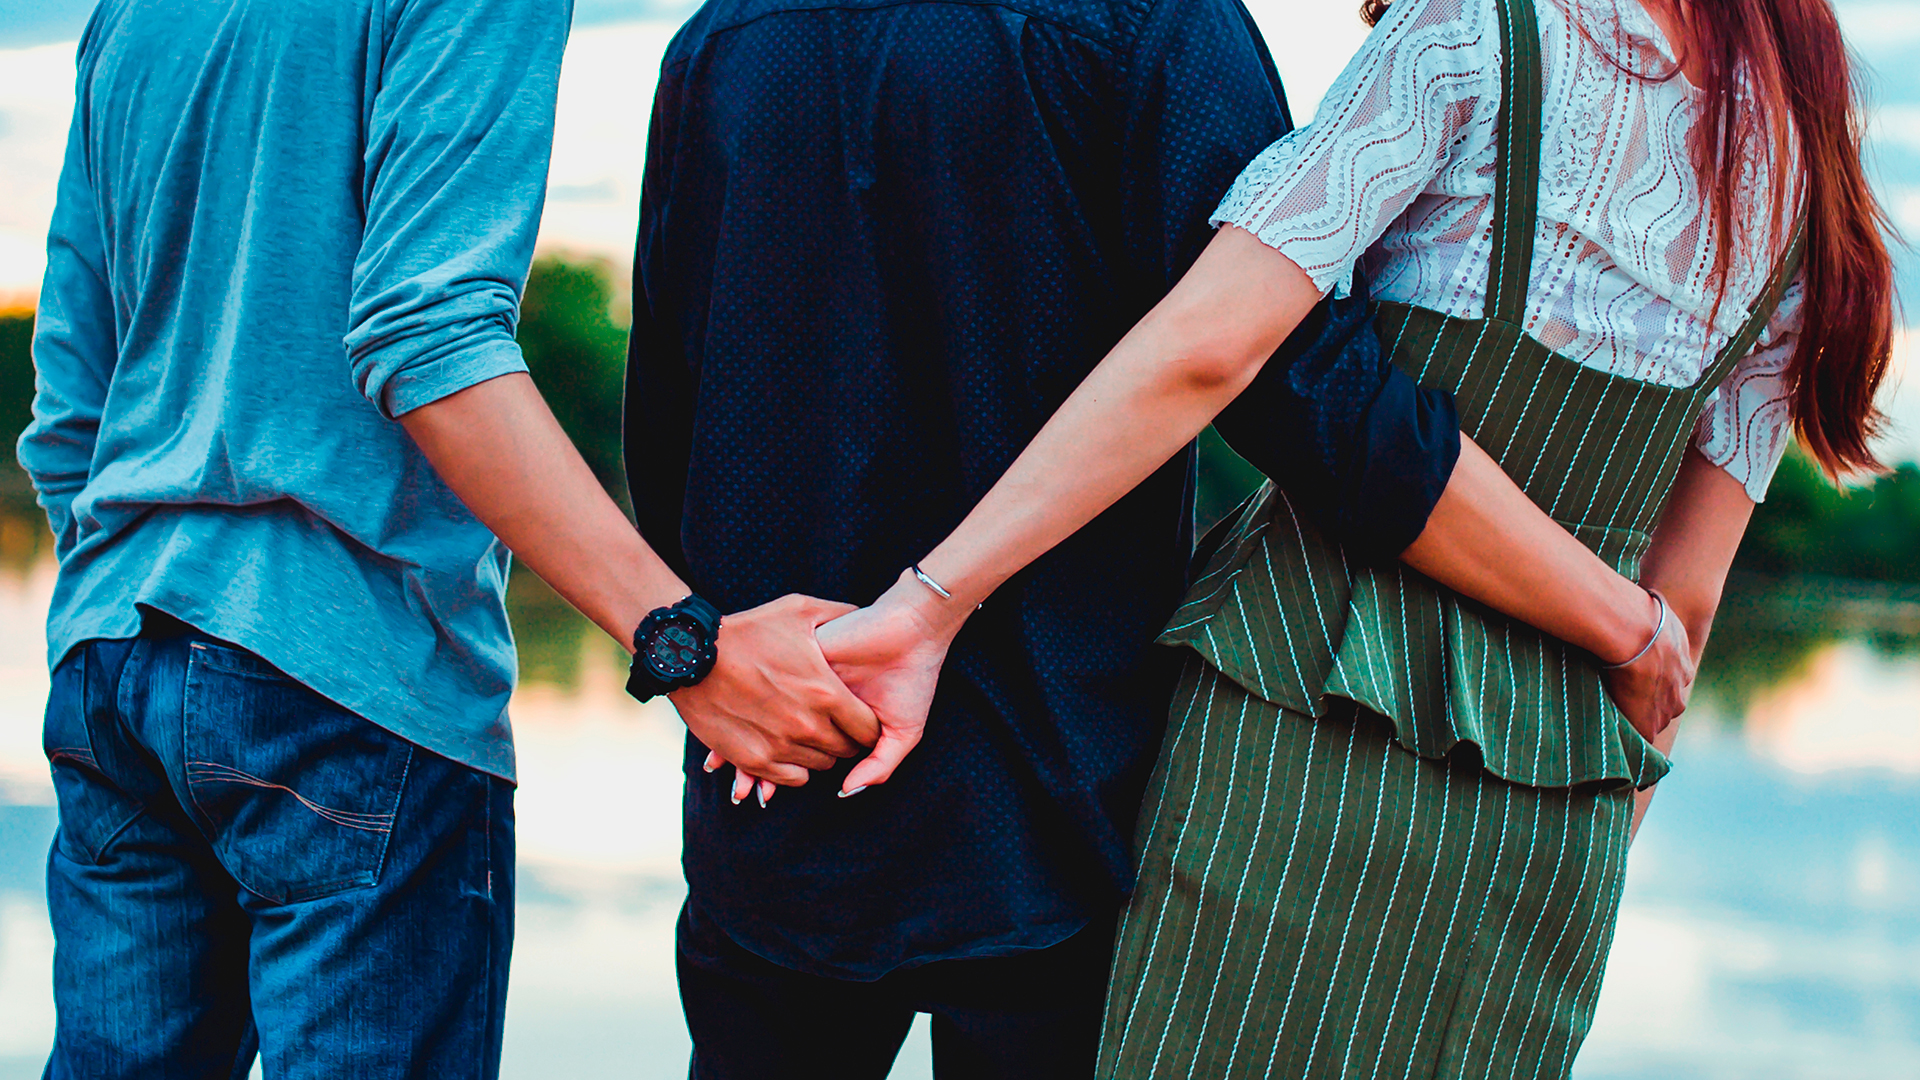 Los amantes estaban en medio de un encuentro, cuando fueron descubiertos (Foto: Shutterstock)